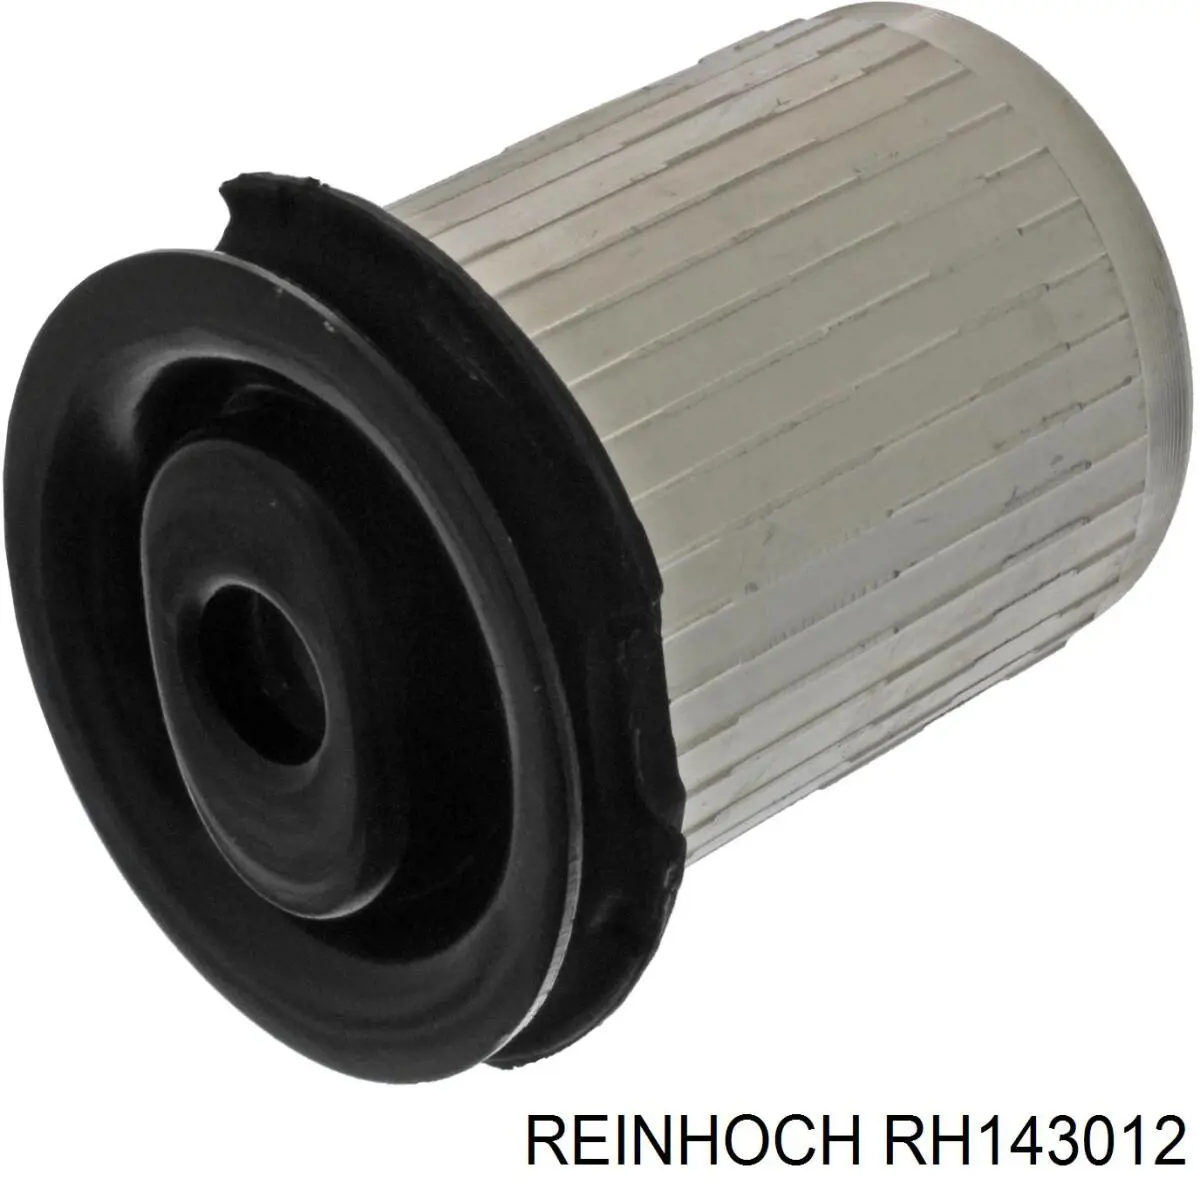 RH143012 Reinhoch сайлентблок переднего нижнего рычага